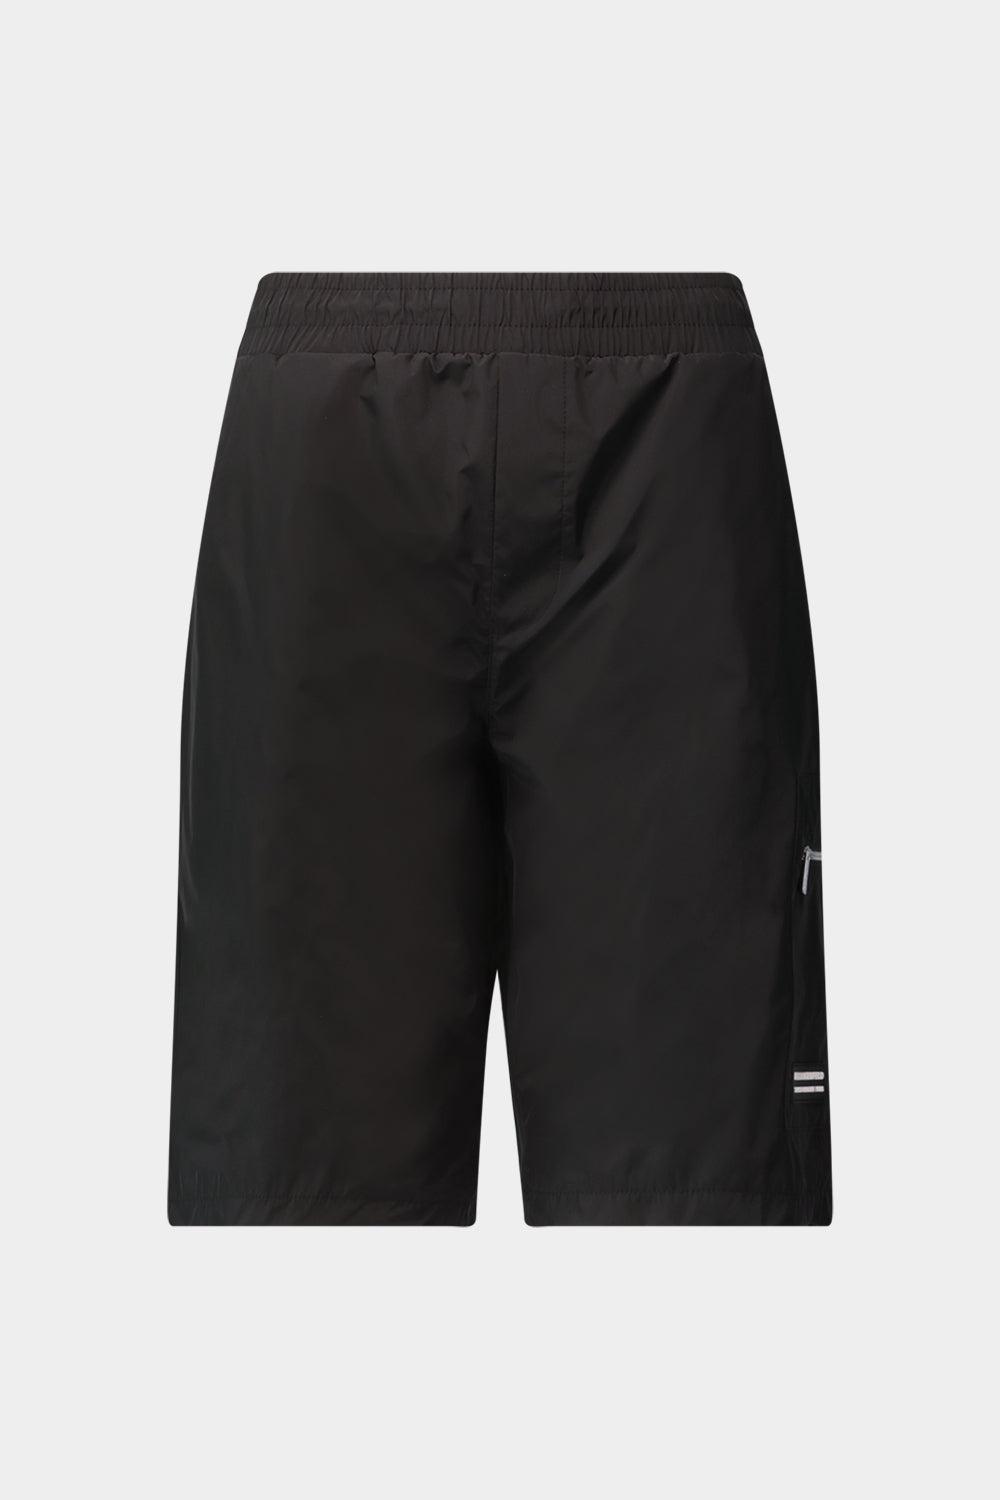 מכנסיים קצרים לגברים לוגו KARL LAGERFELD Vendome online | ונדום .